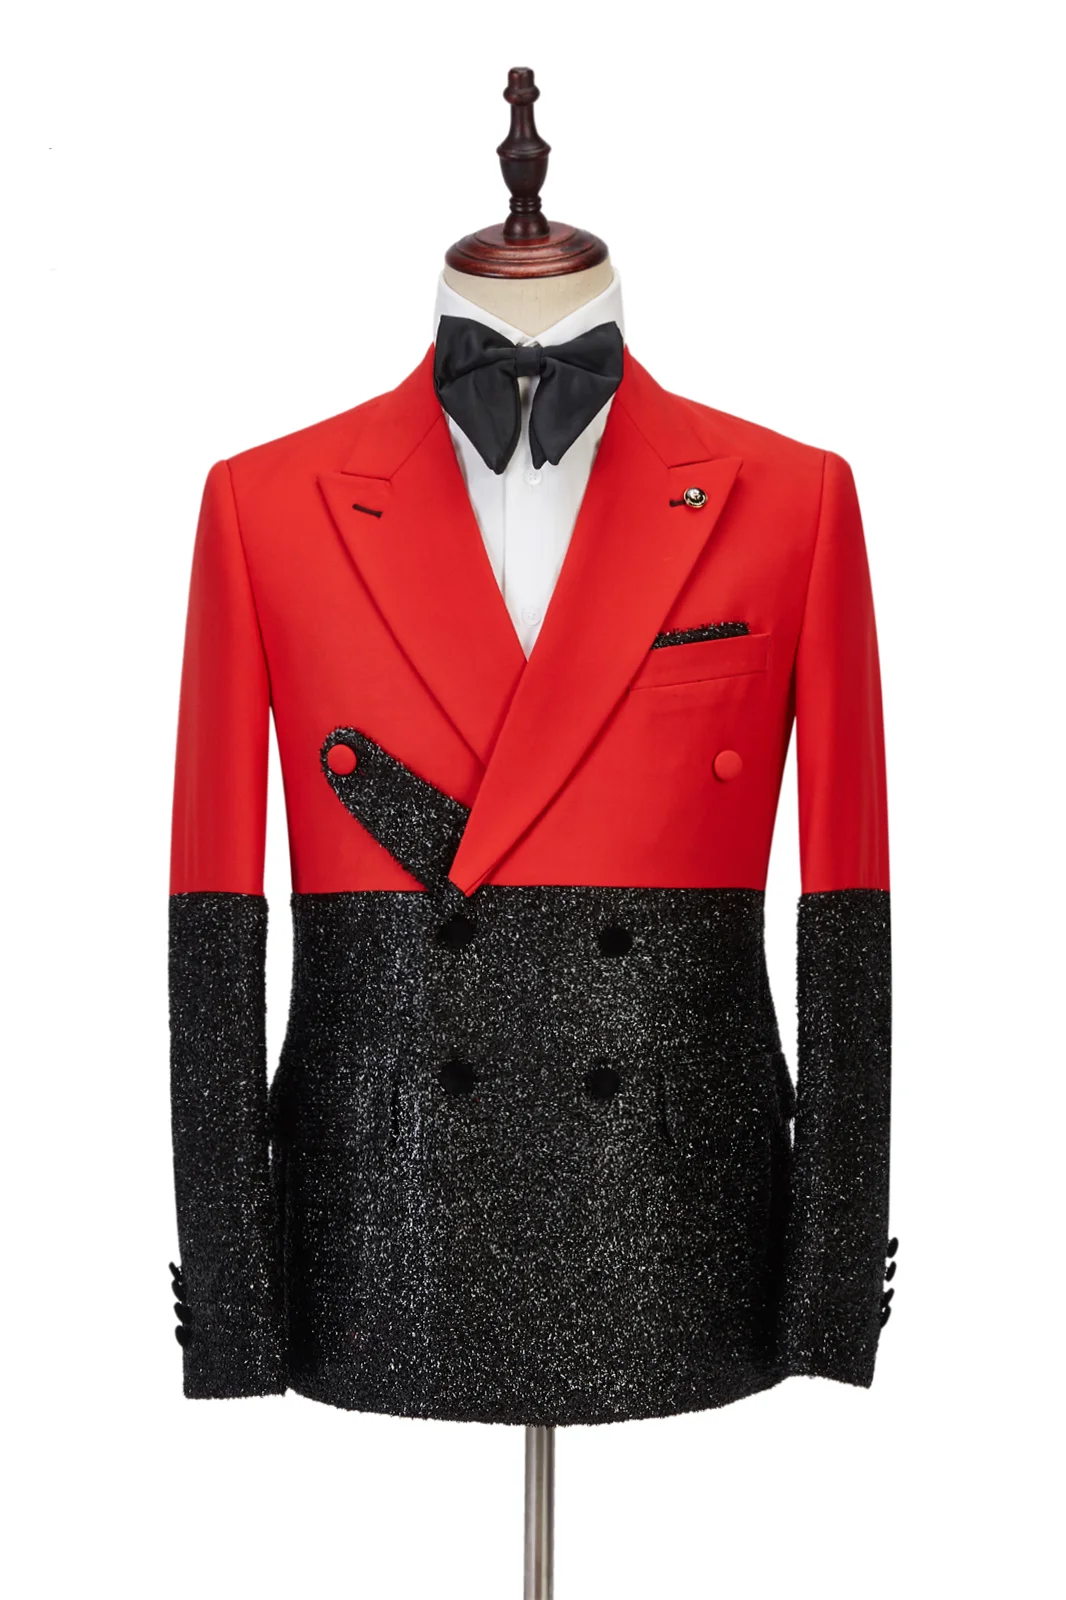 Newest Peak Lapel Bright Red Stitching Sparkle Black Fashion Style Wedding Tuxedo